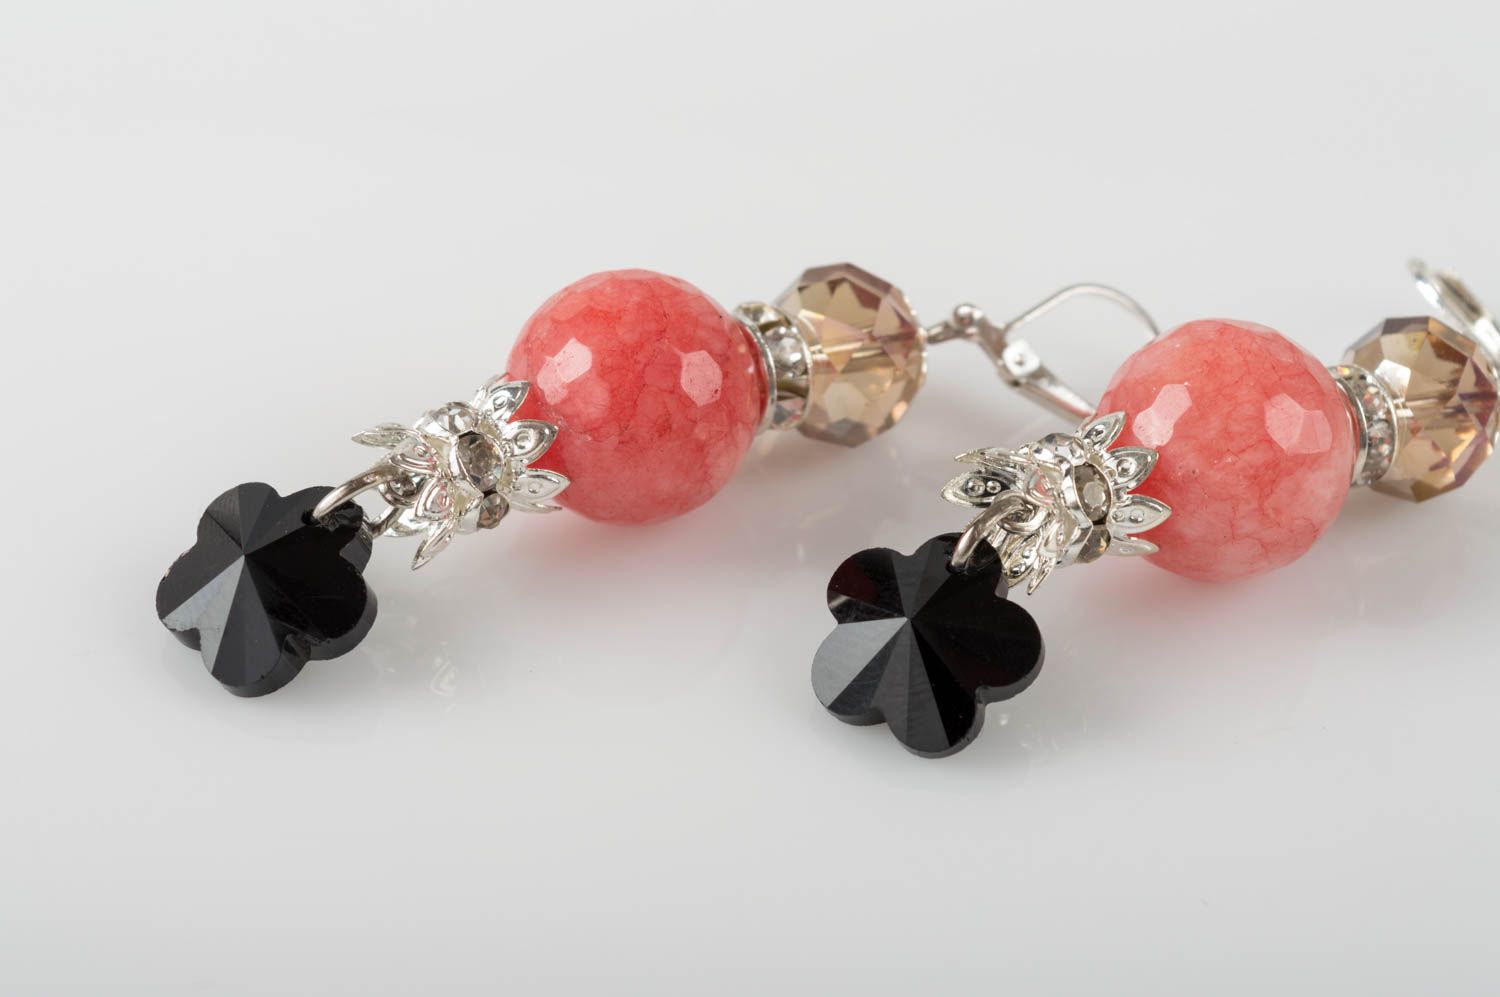 Unusual handmade gemstone earrings designer crystal earrings gifts for her photo 4